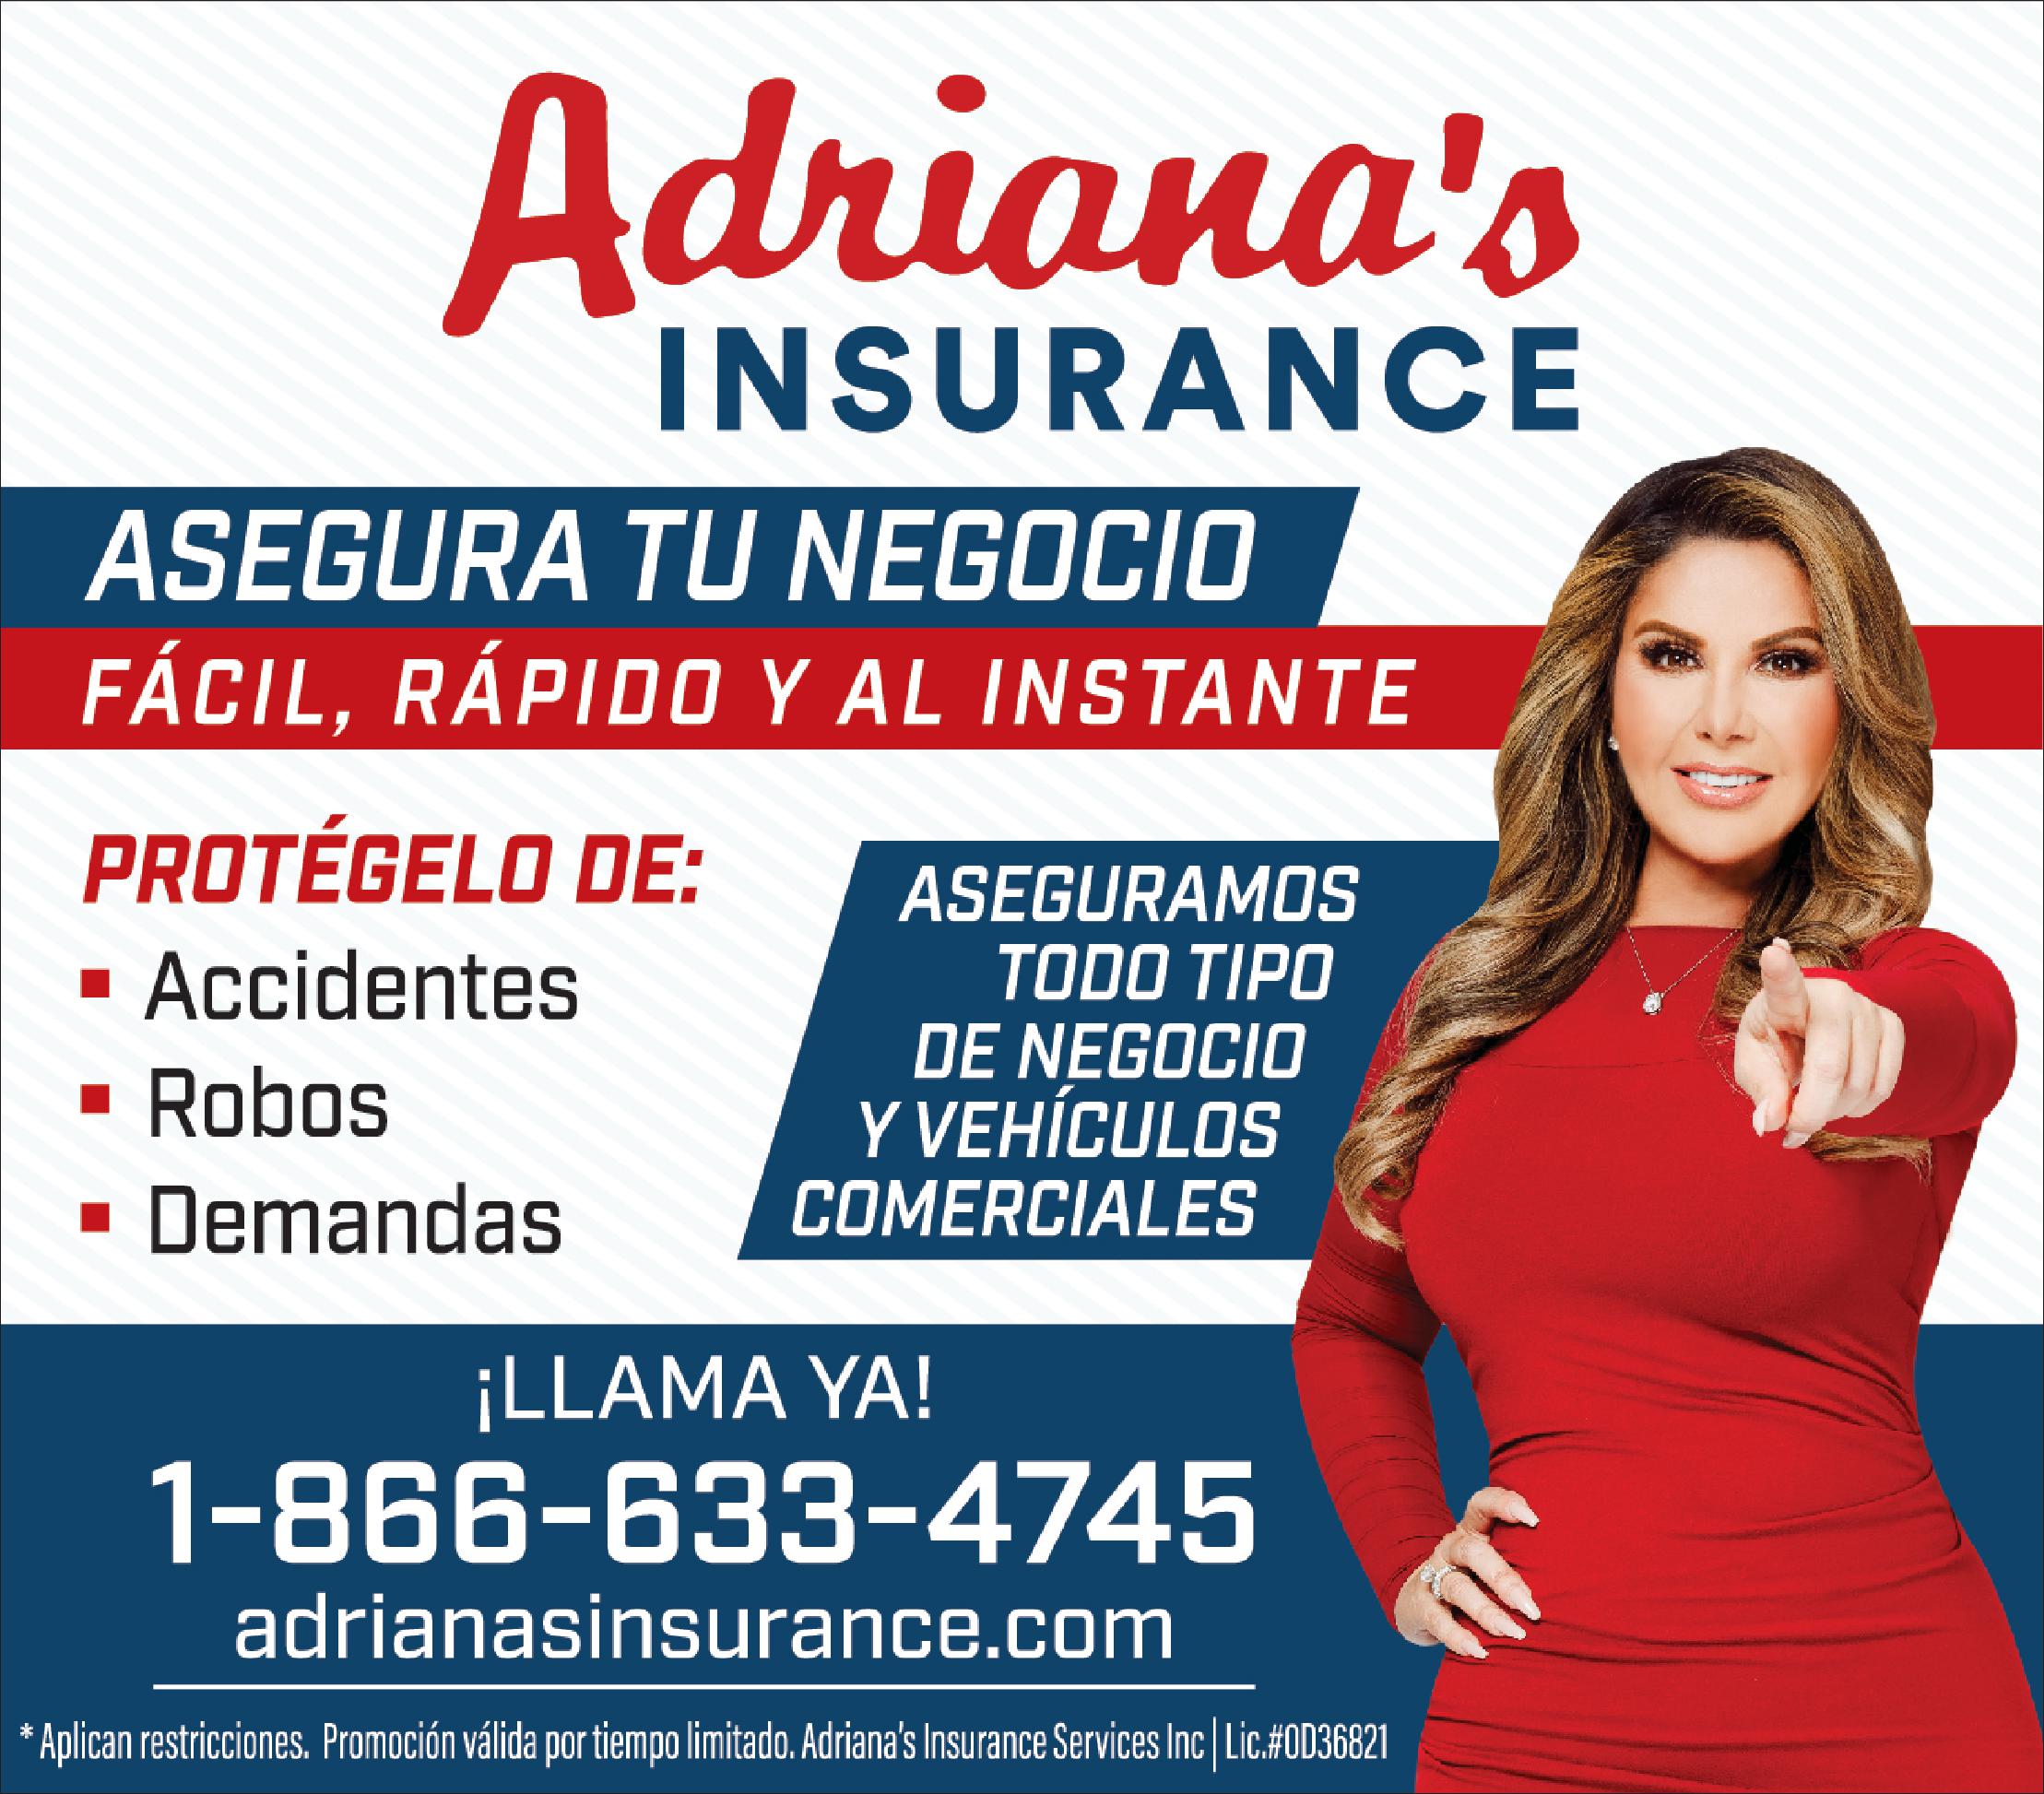 Adriana's Insurance-Asegura tu Negocio, portegelo de Accidentes, Robos y Demanadas